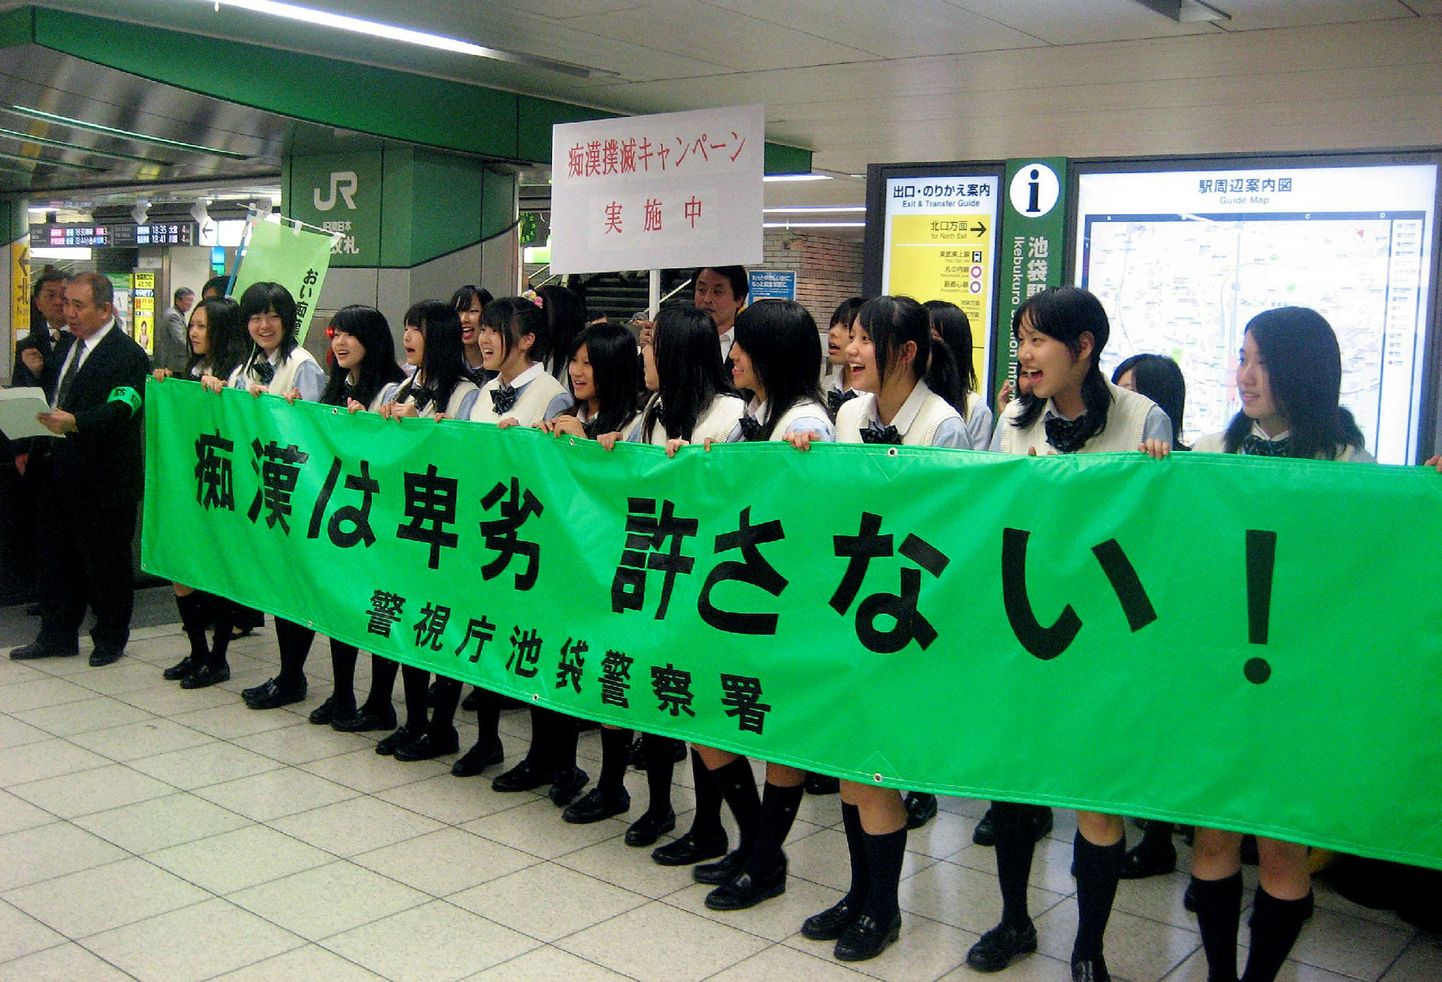 Noored jaapanlannad nõuavad, et politsei paneks ühistranspordis käperdamisele piiri